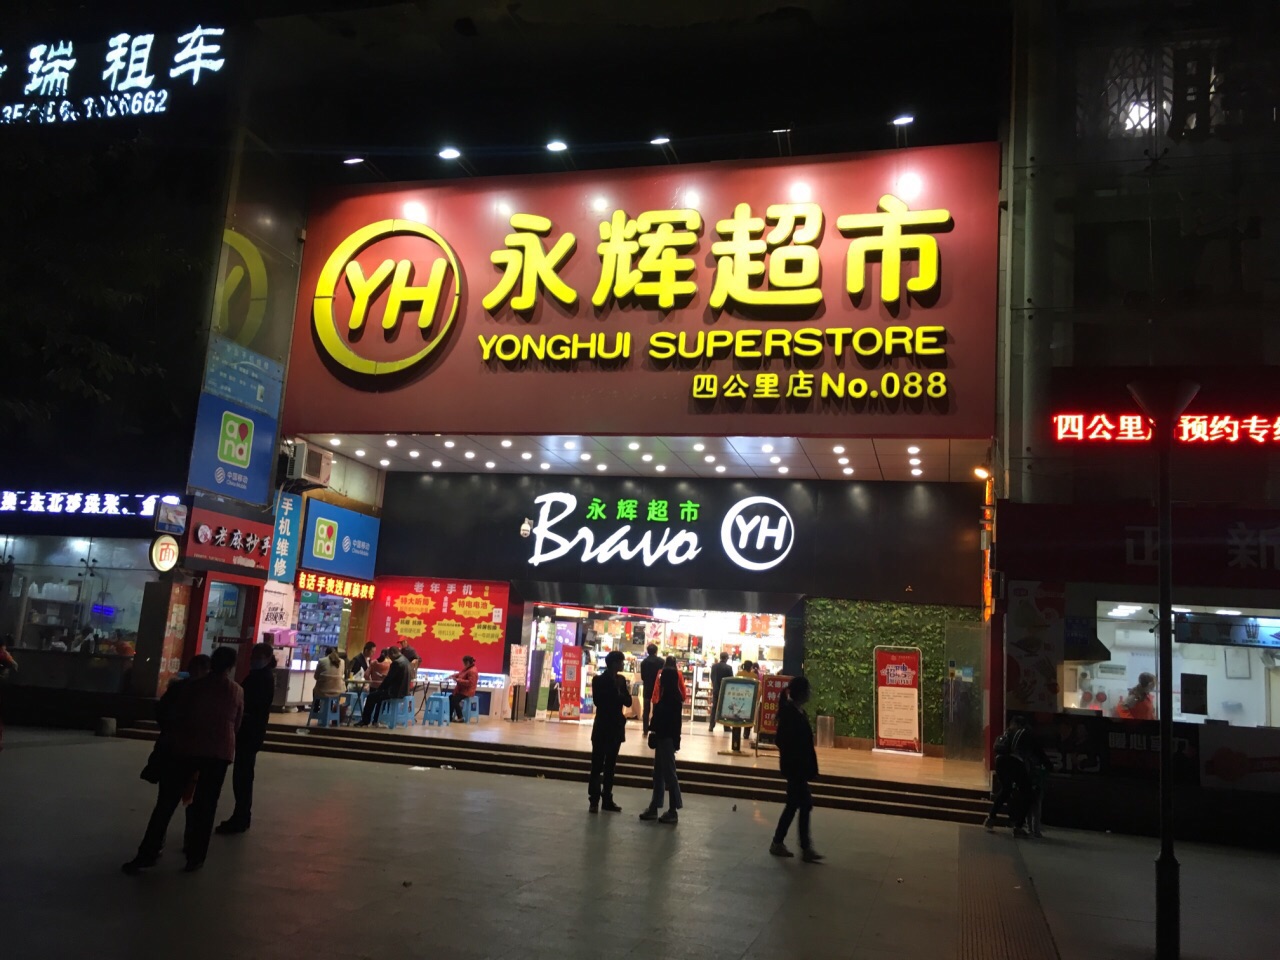 重庆永辉超市(四公里店)购物攻略,永辉超市(四公里店)物中心/地址